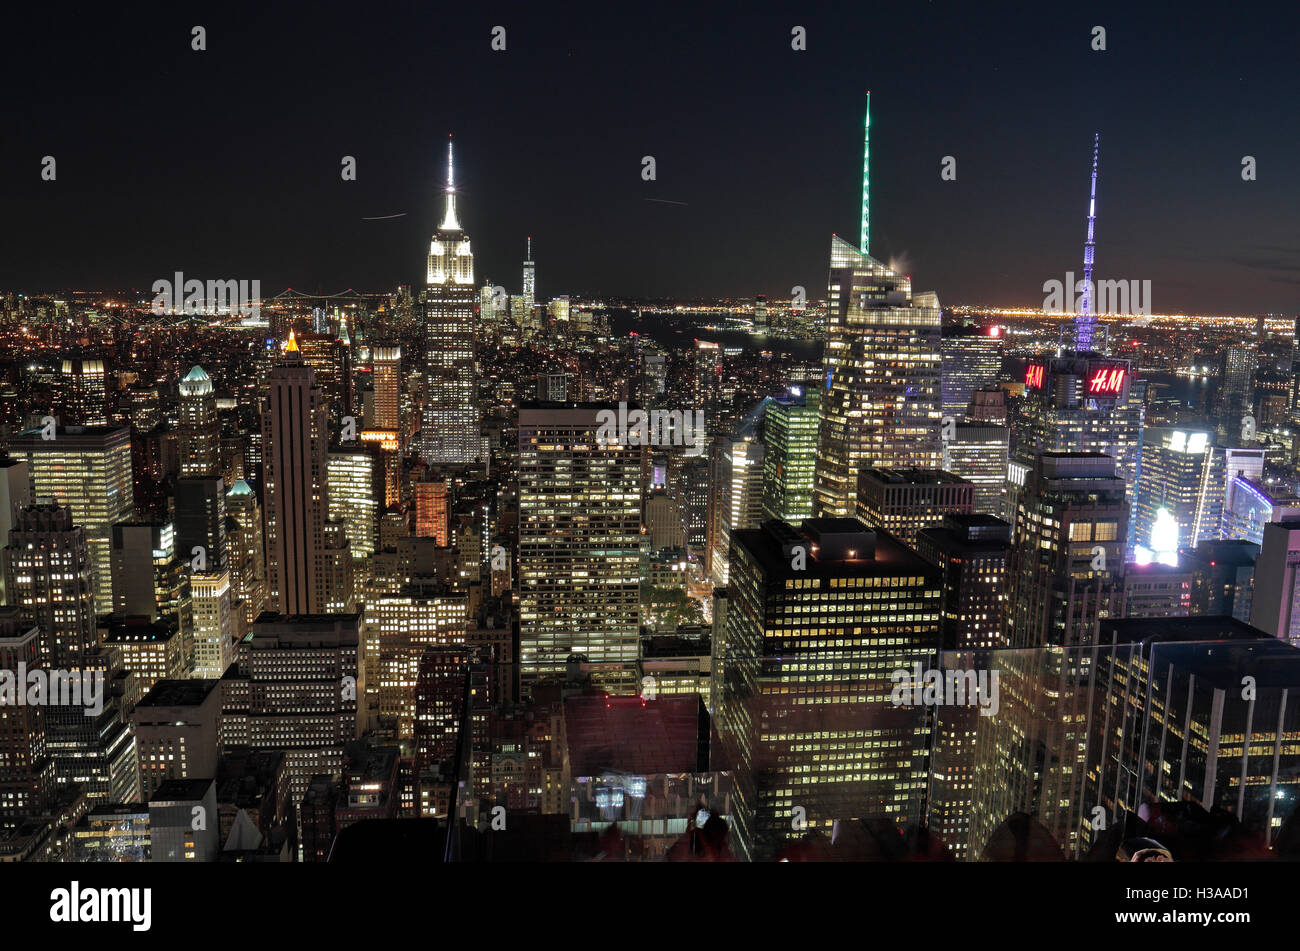 Luftbild von der "Top of the World" Aussichtsplattform auf dem Empire State Building & Innenstadt von Manhattan, New York. Stockfoto